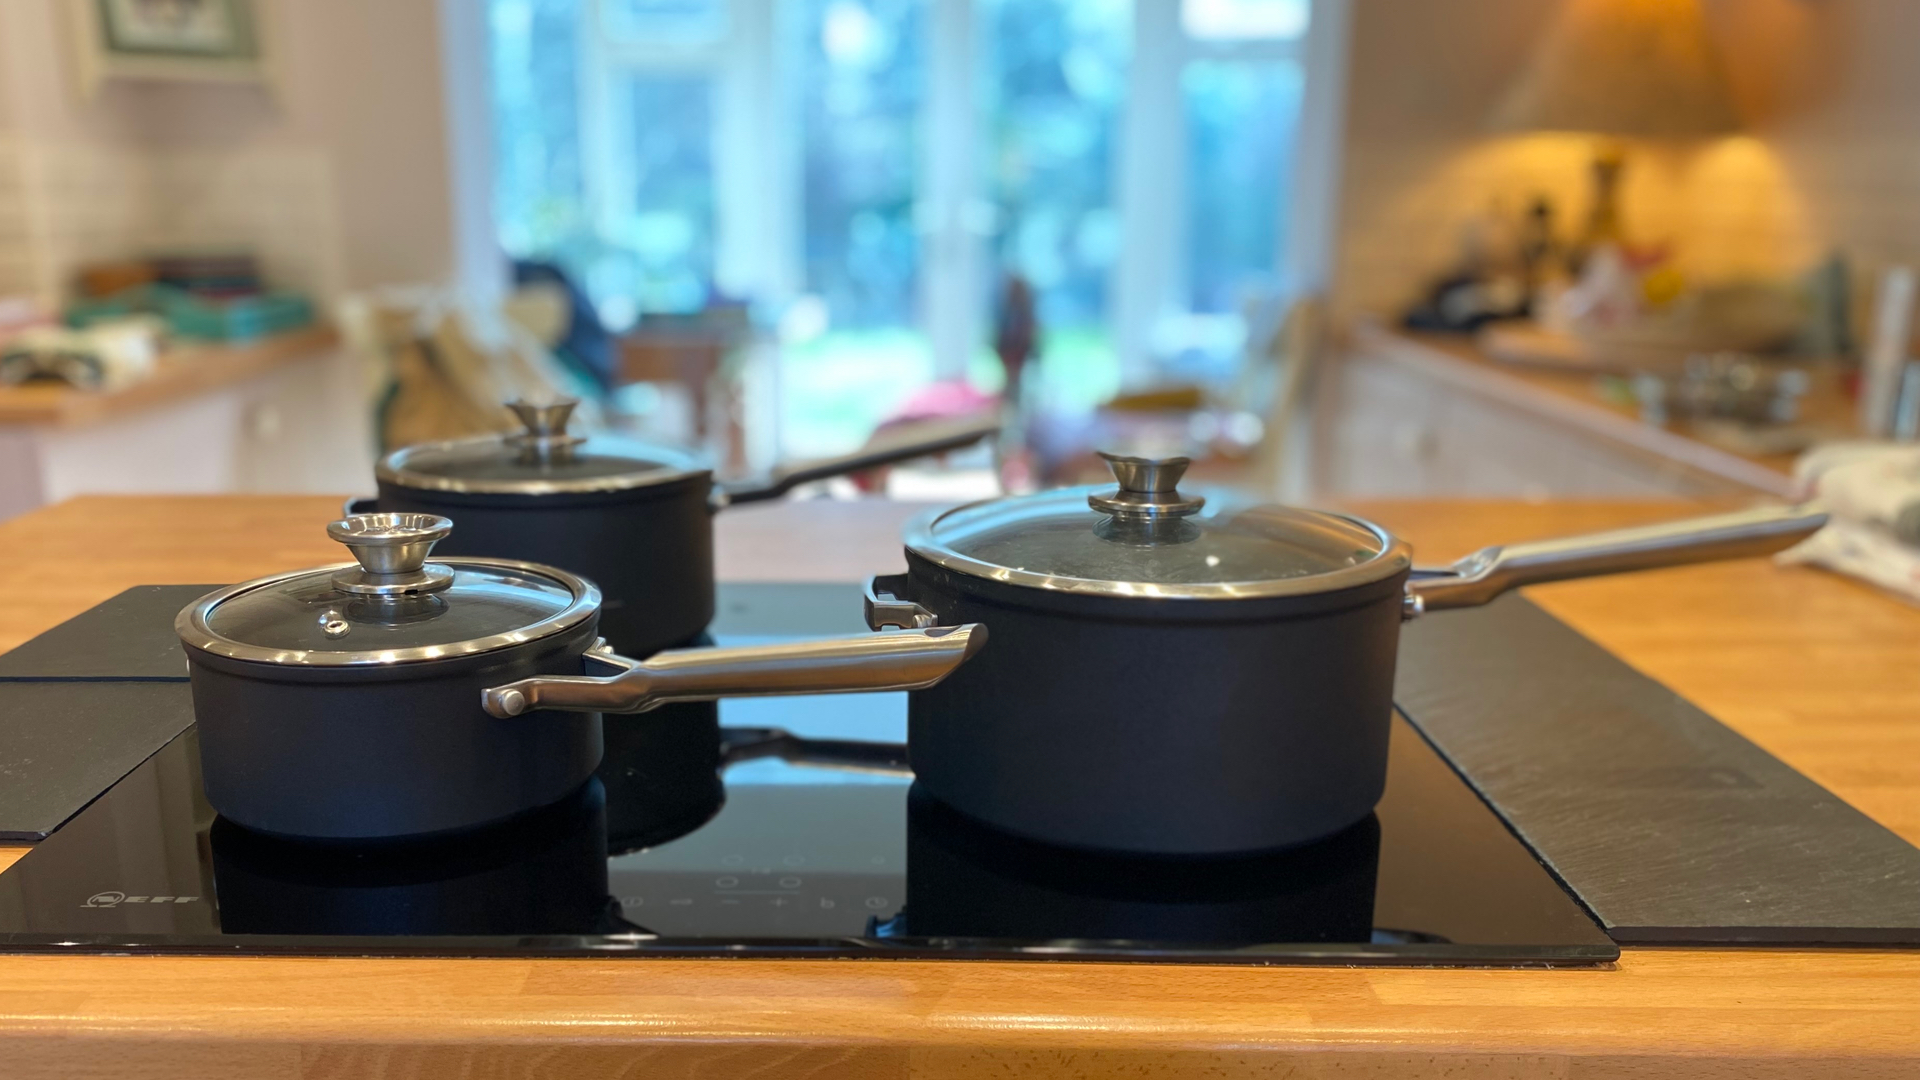 Ninja Foodi NeverStick Cookware Set Review and Cook Test 